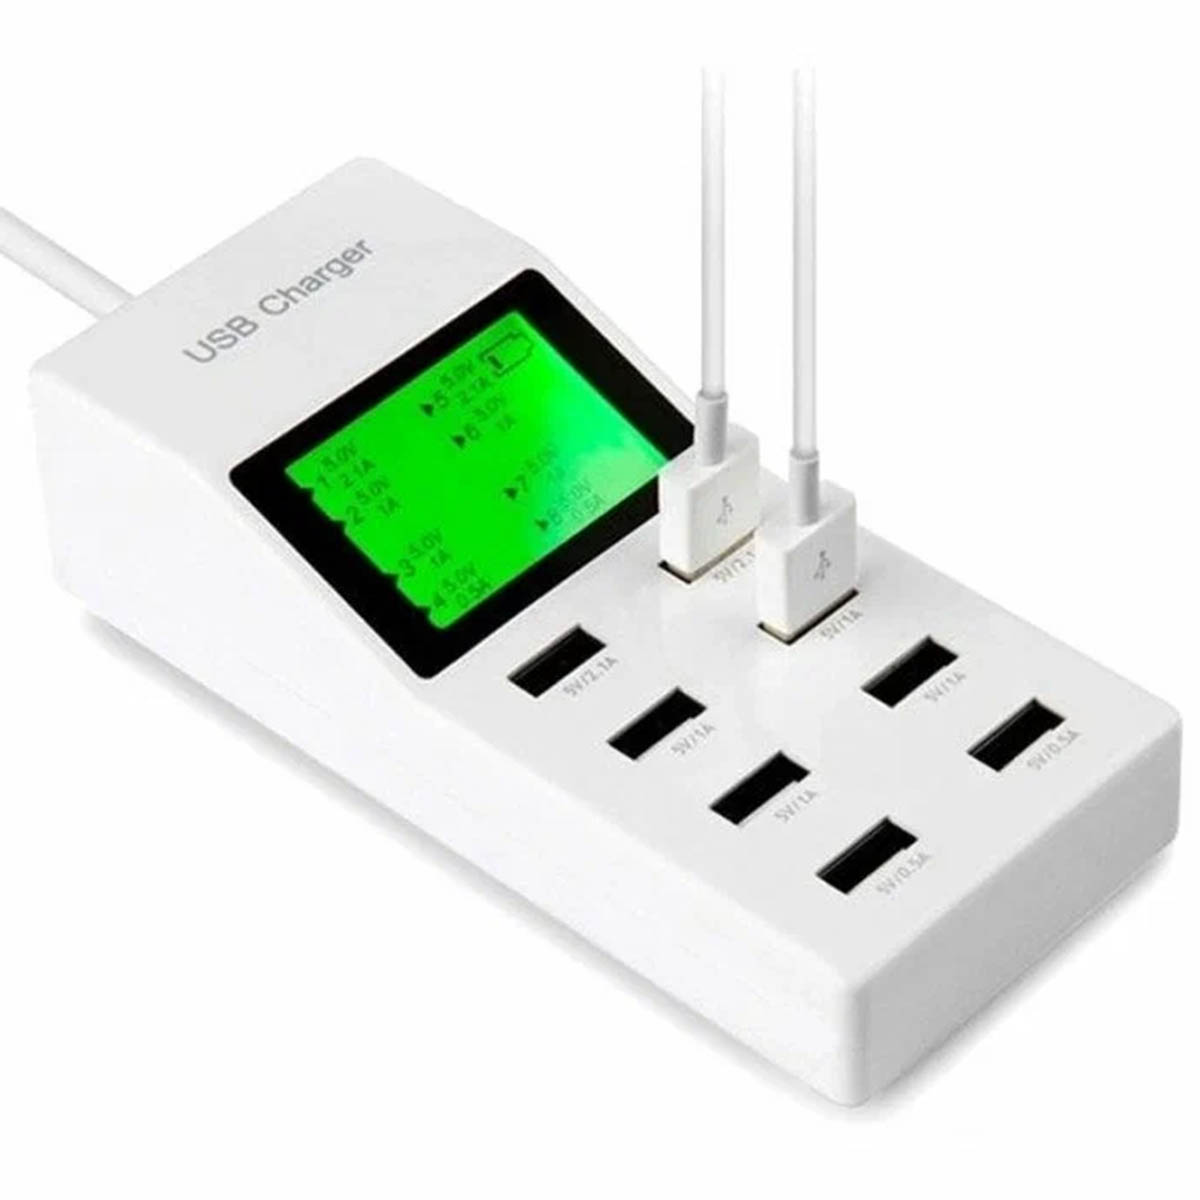 СЗУ (Сетевое зарядное устройство) USB Charger YC-CDA6, 8 портов, 40W, цвет белый